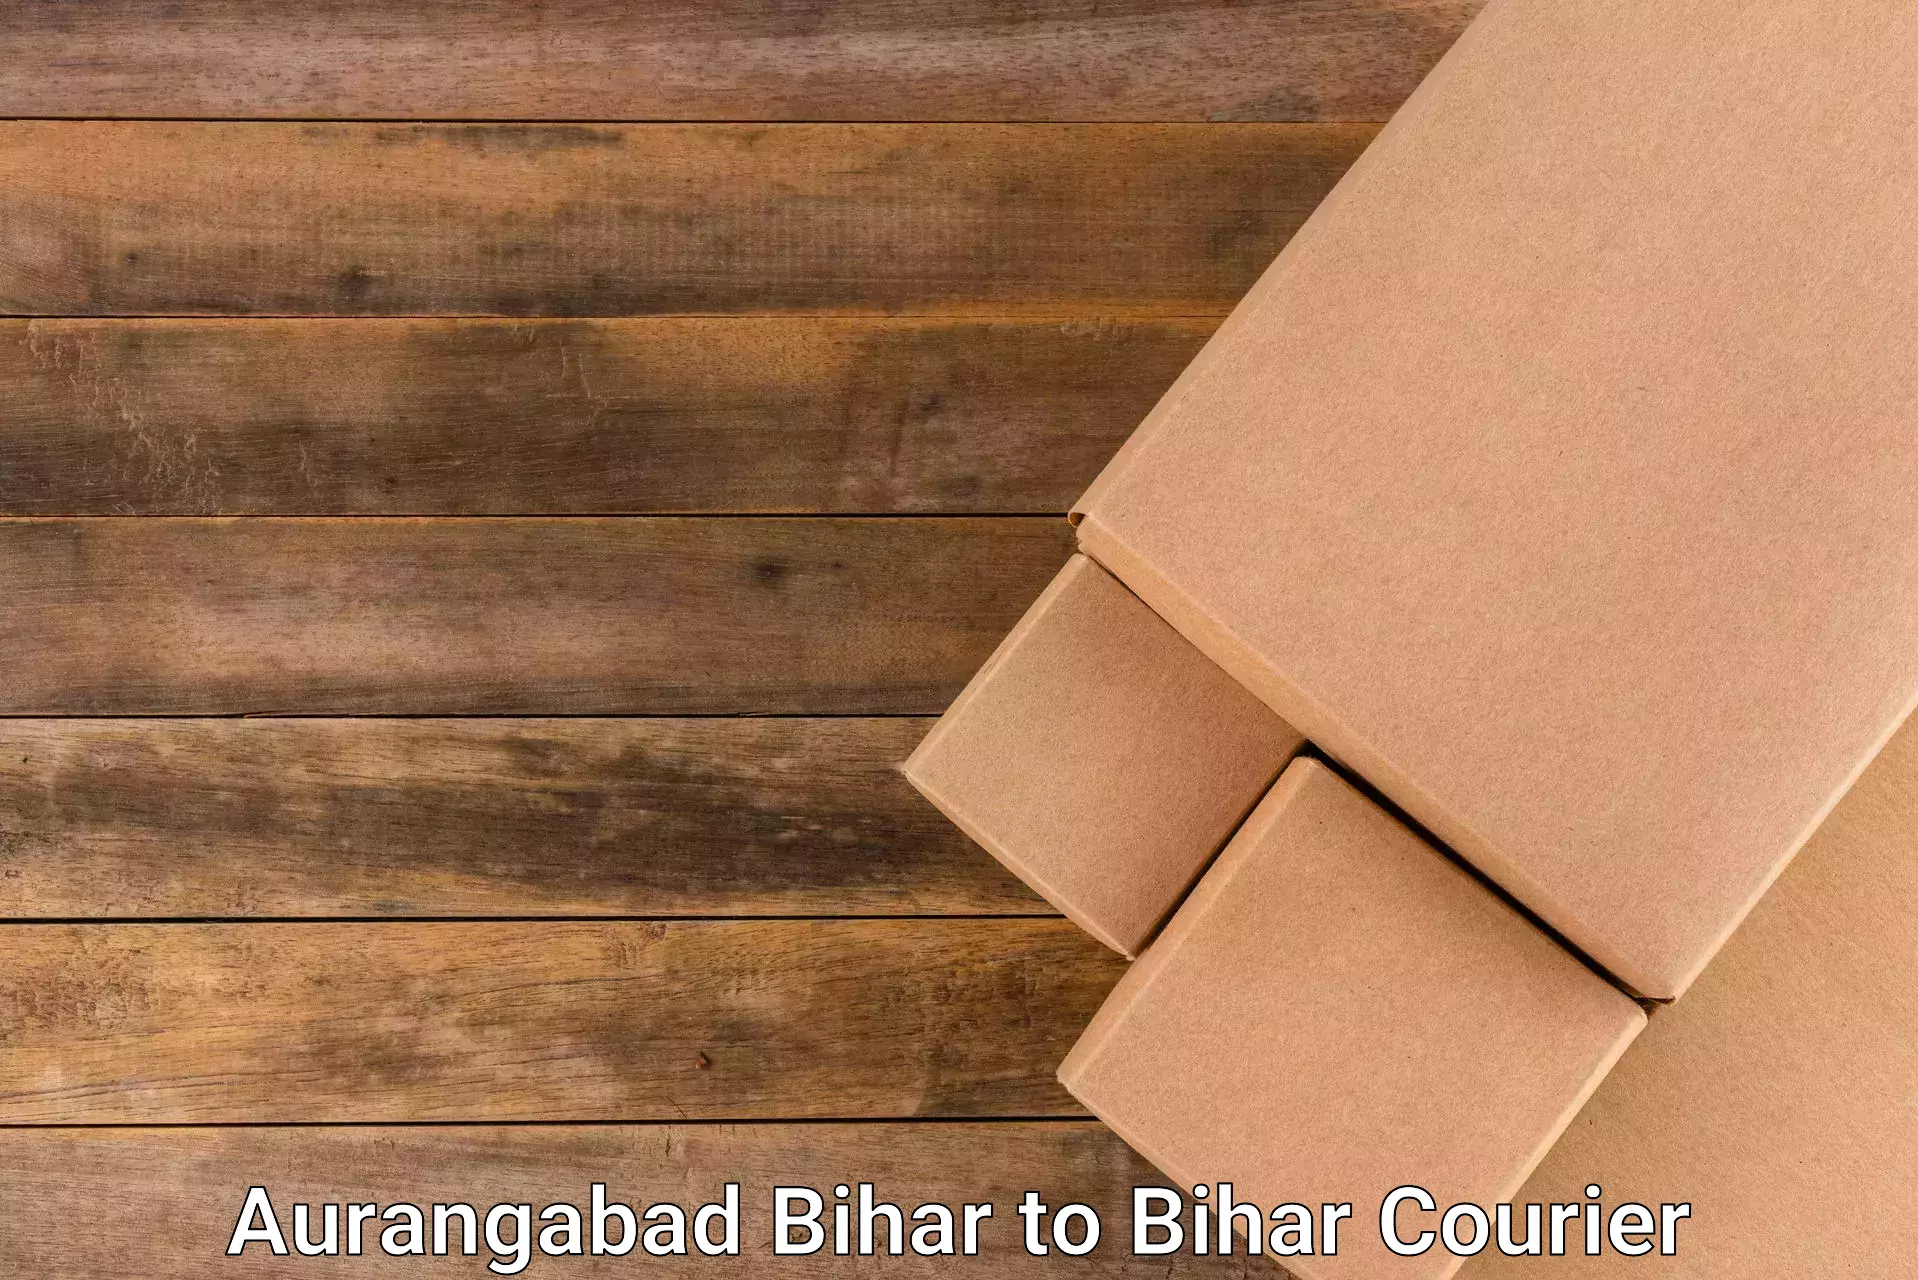 Online courier booking in Aurangabad Bihar to Jamui